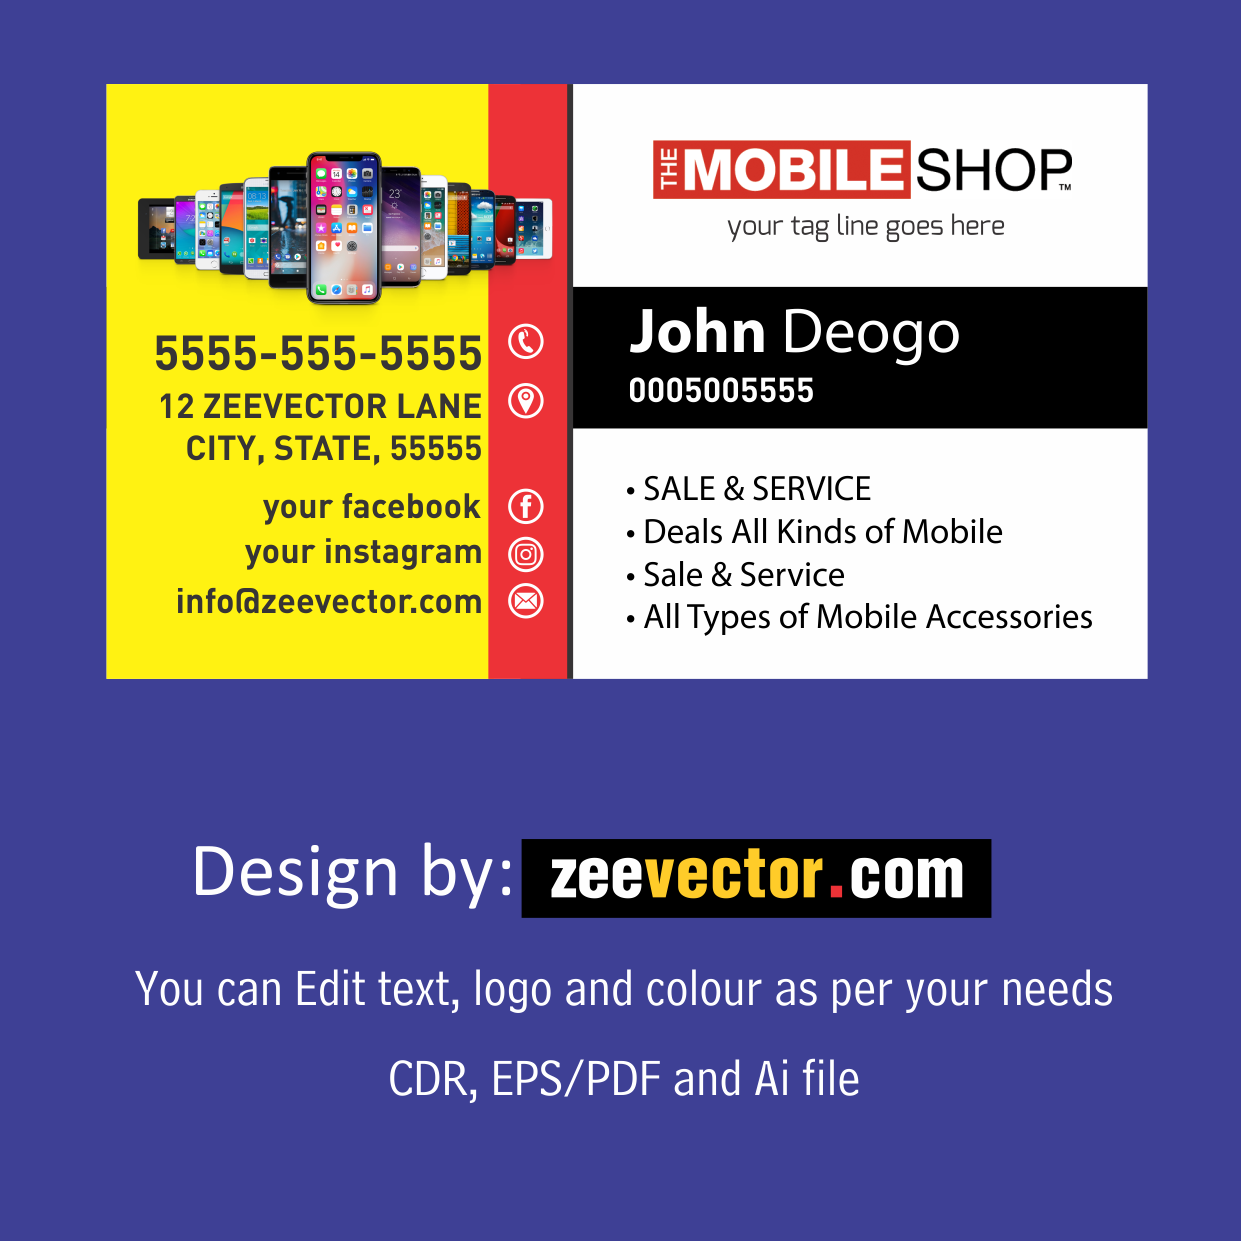 Mobile-Shop-Visiting-Card-Design-Cdr-File